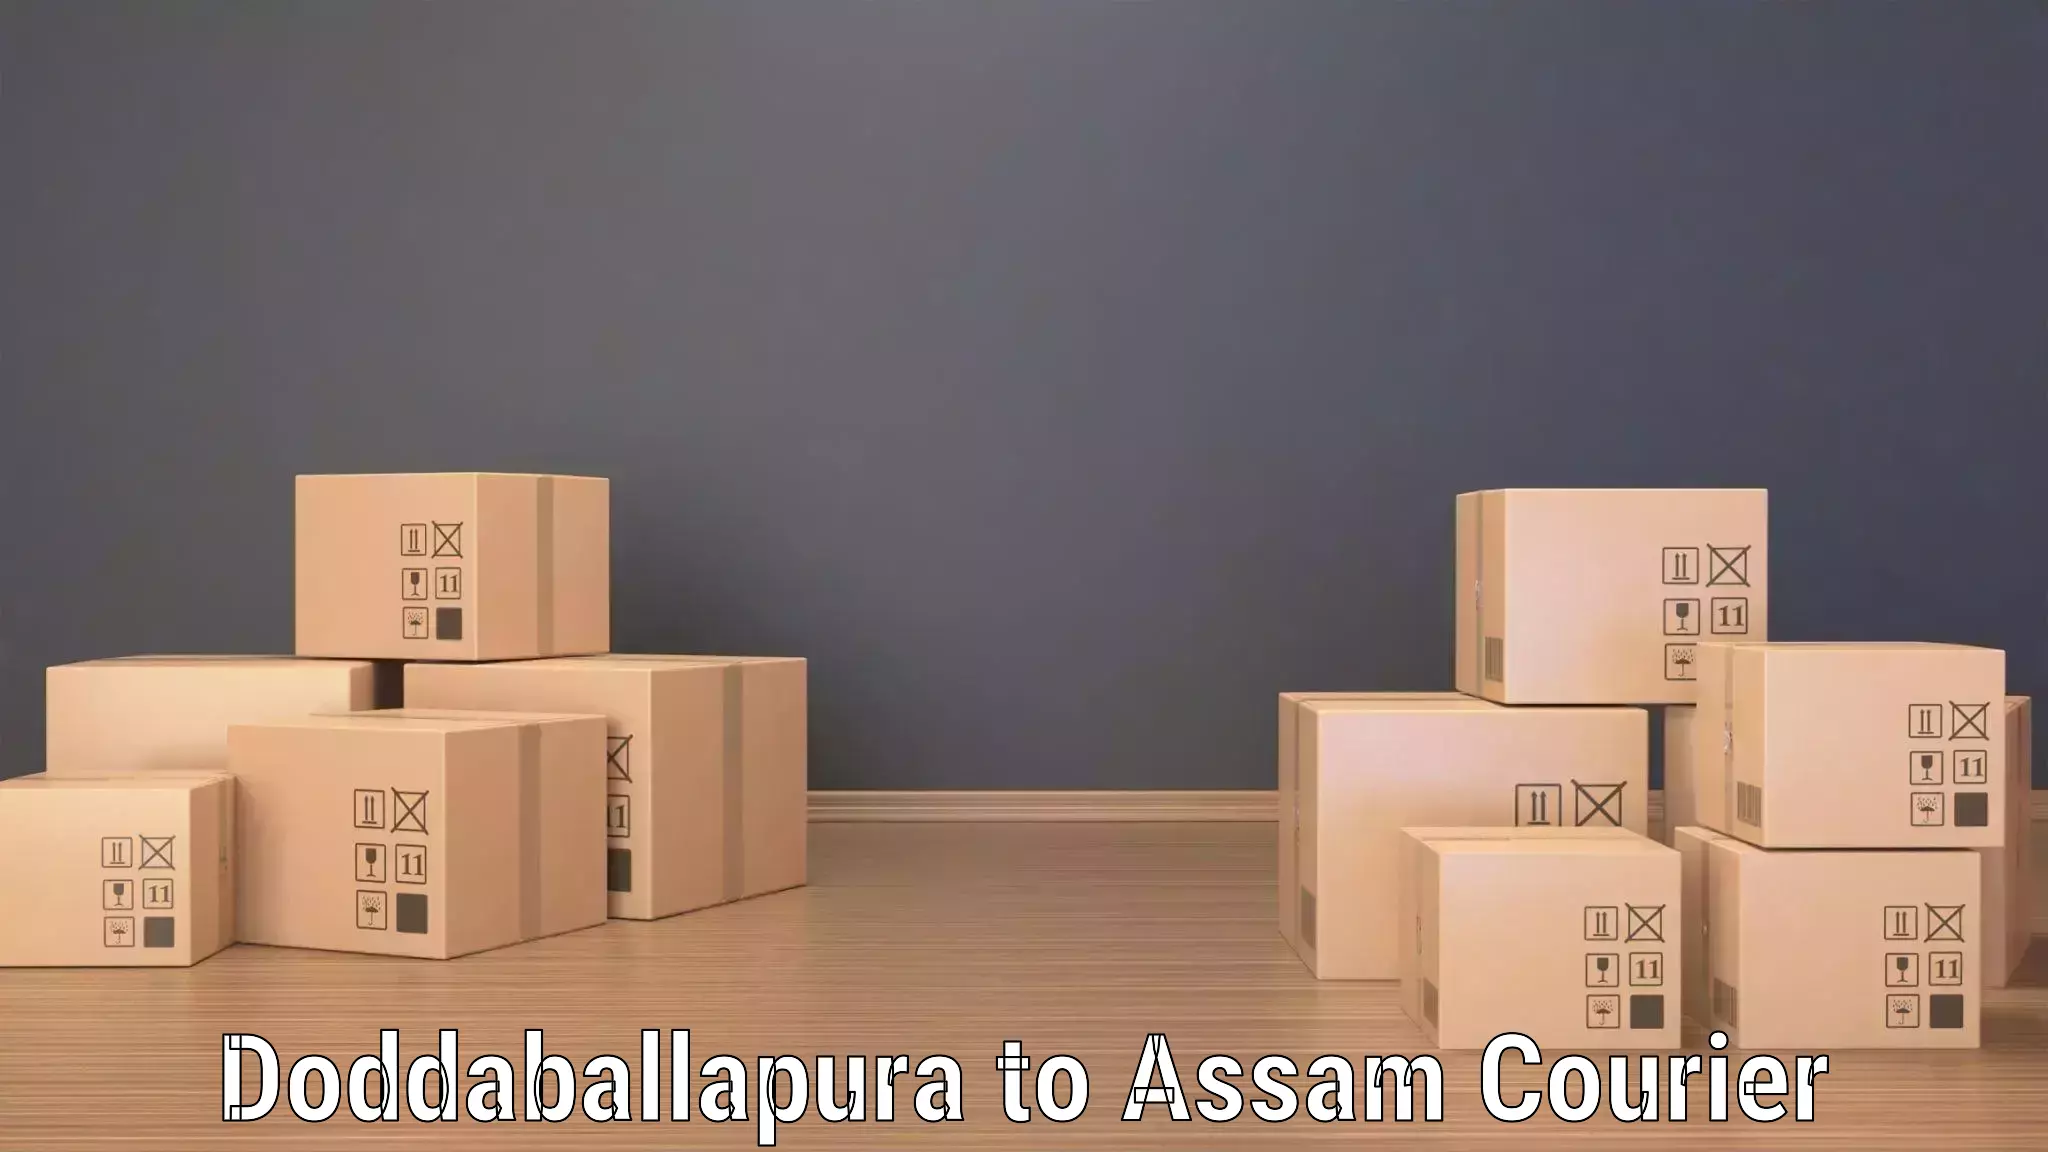 Package forwarding in Doddaballapura to Hajo